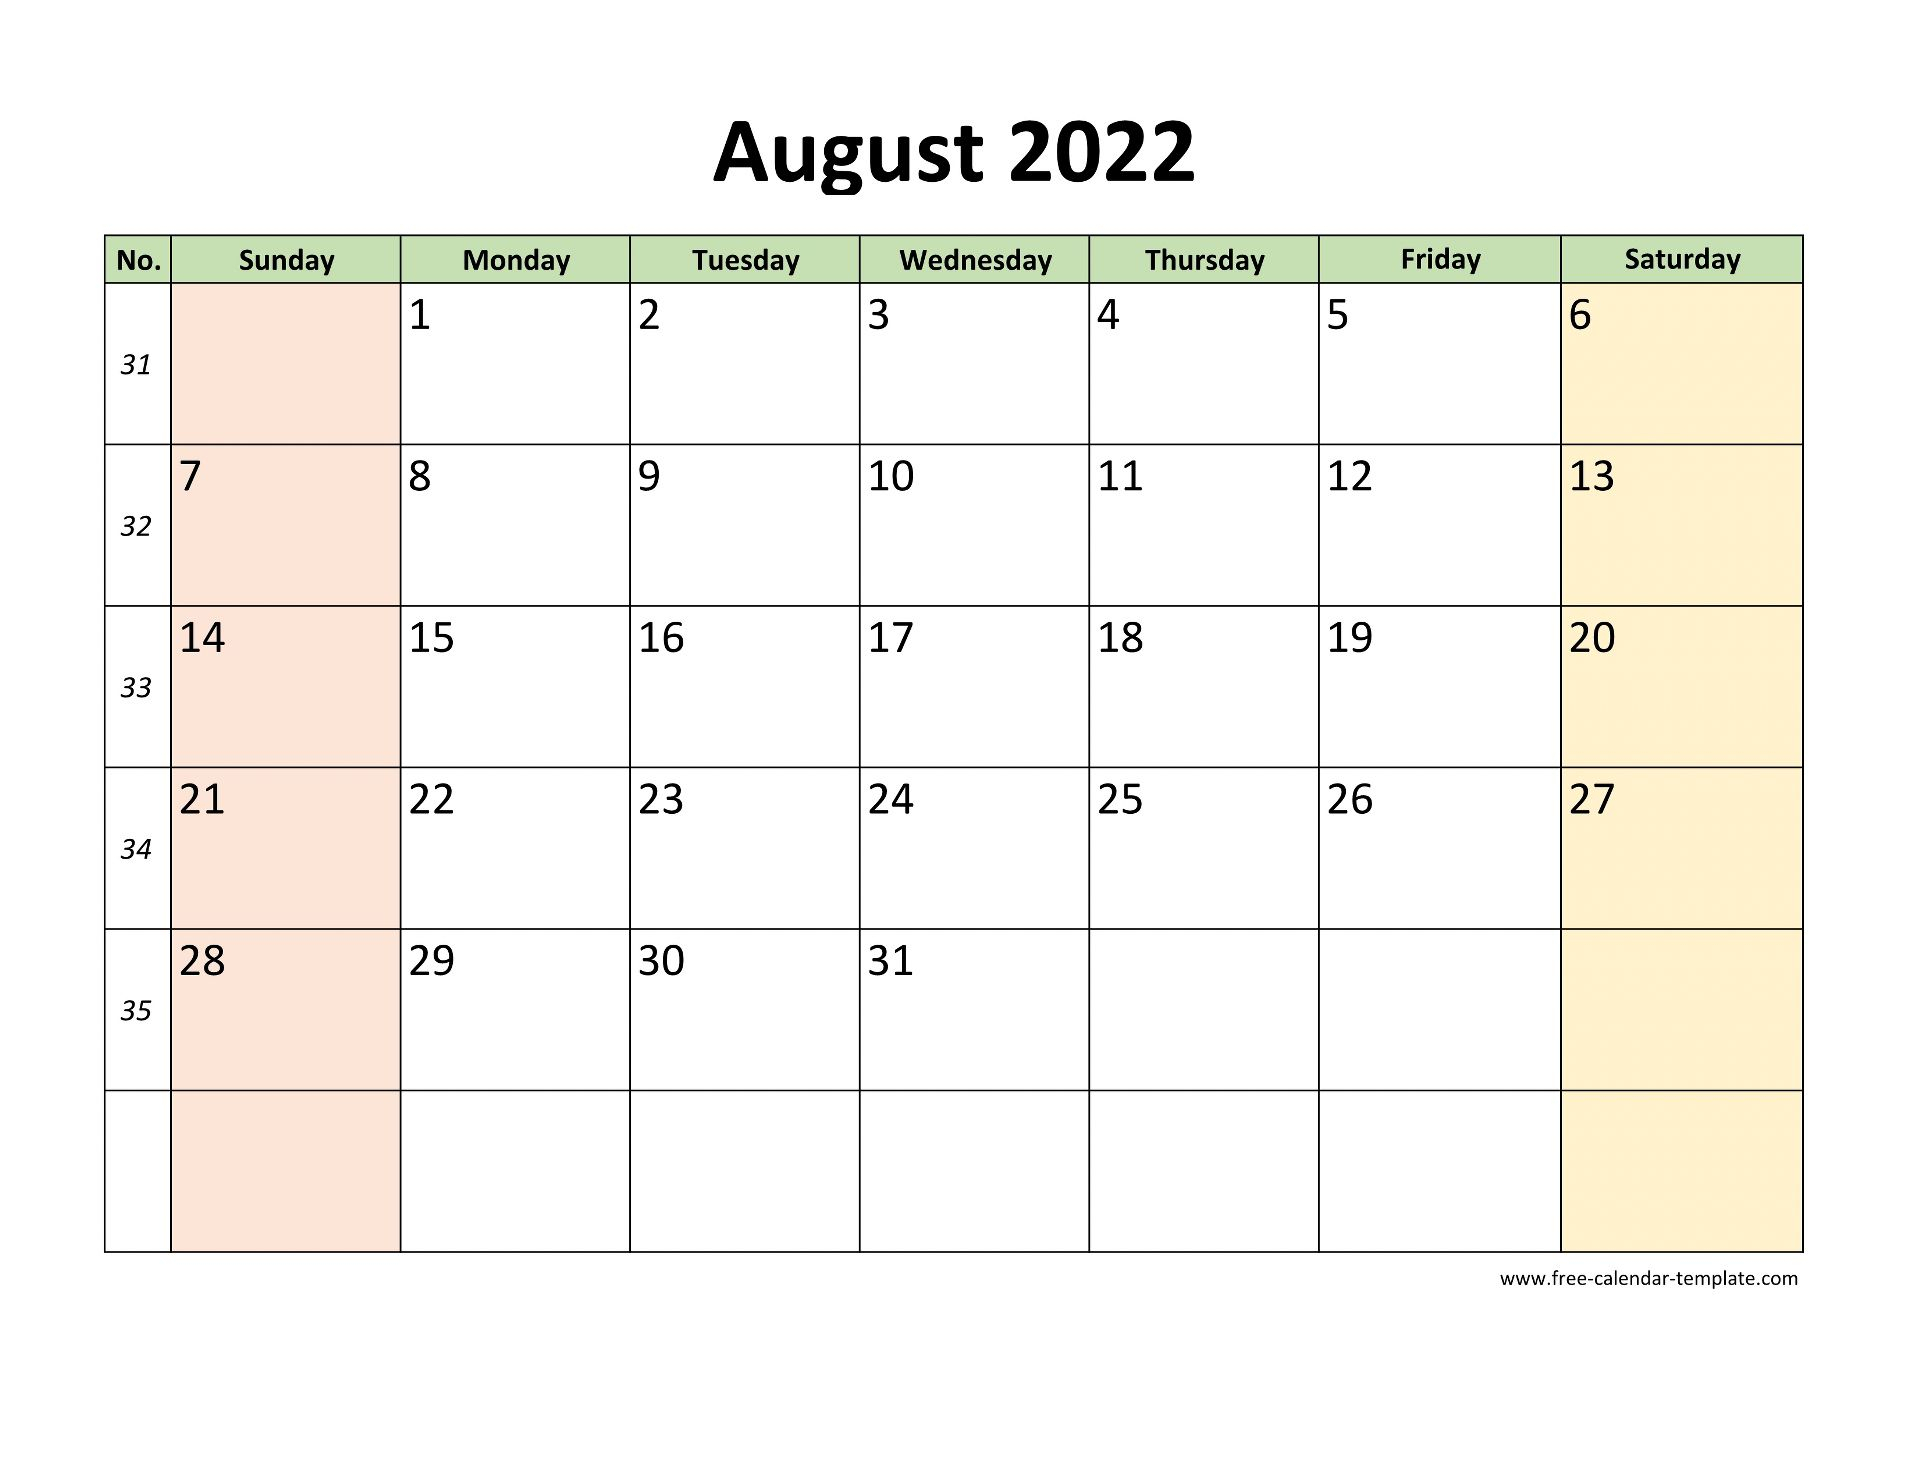 August 2022 Free Calendar Tempplate | Freecalendartemplate throughout Printable August 2022 Calendar